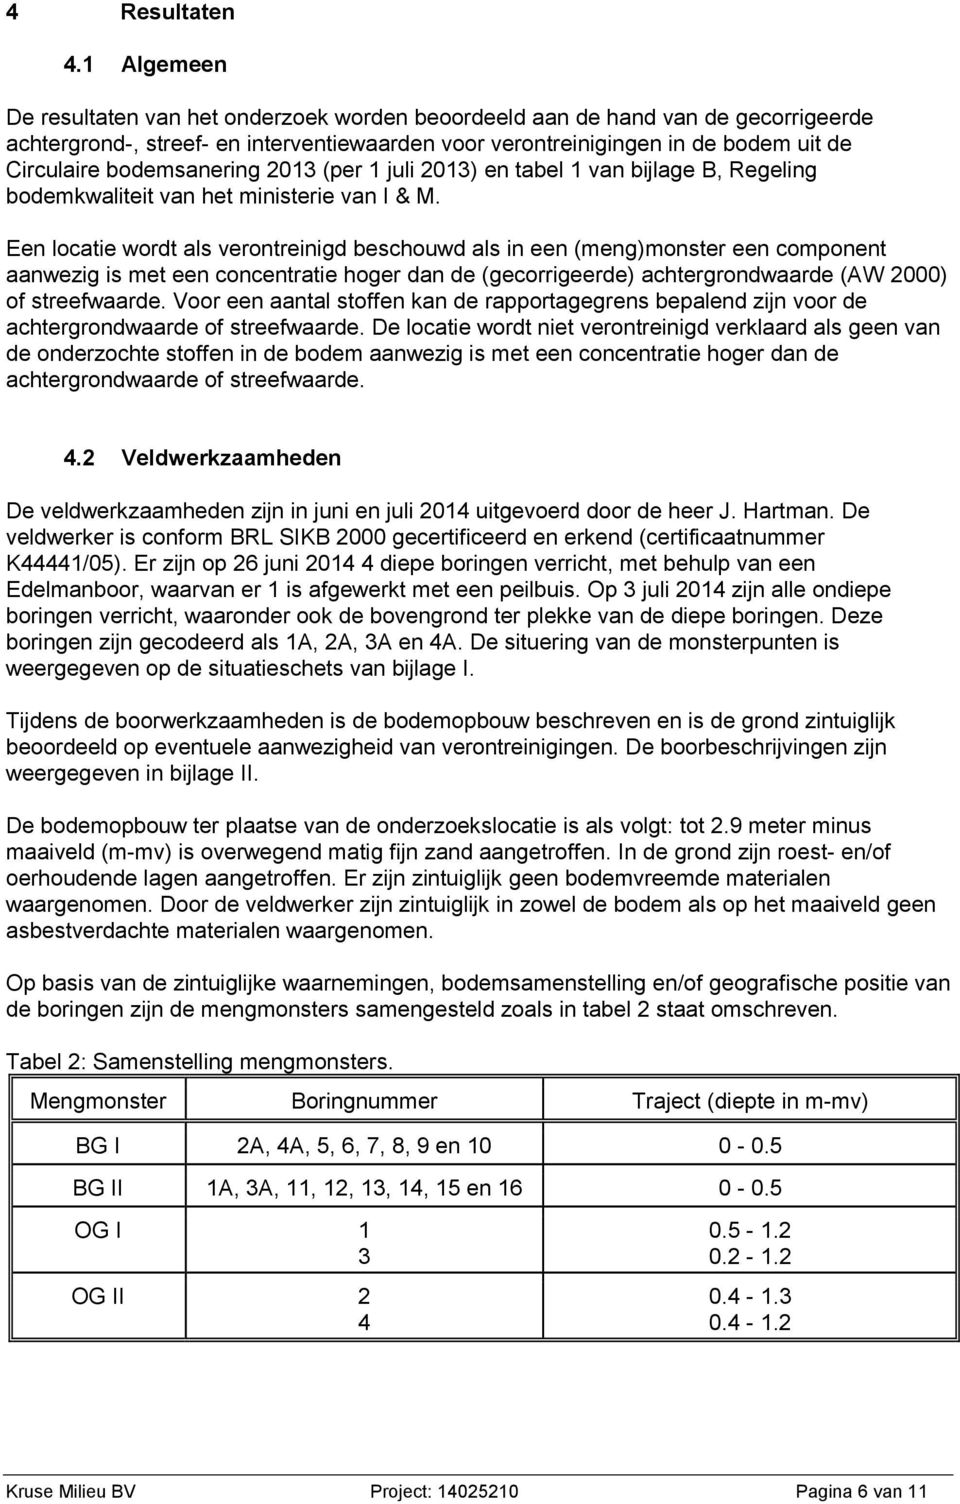 bodemsanering 2013 (per 1 juli 2013) en tabel 1 van bijlage B, Regeling bodemkwaliteit van het ministerie van I & M.